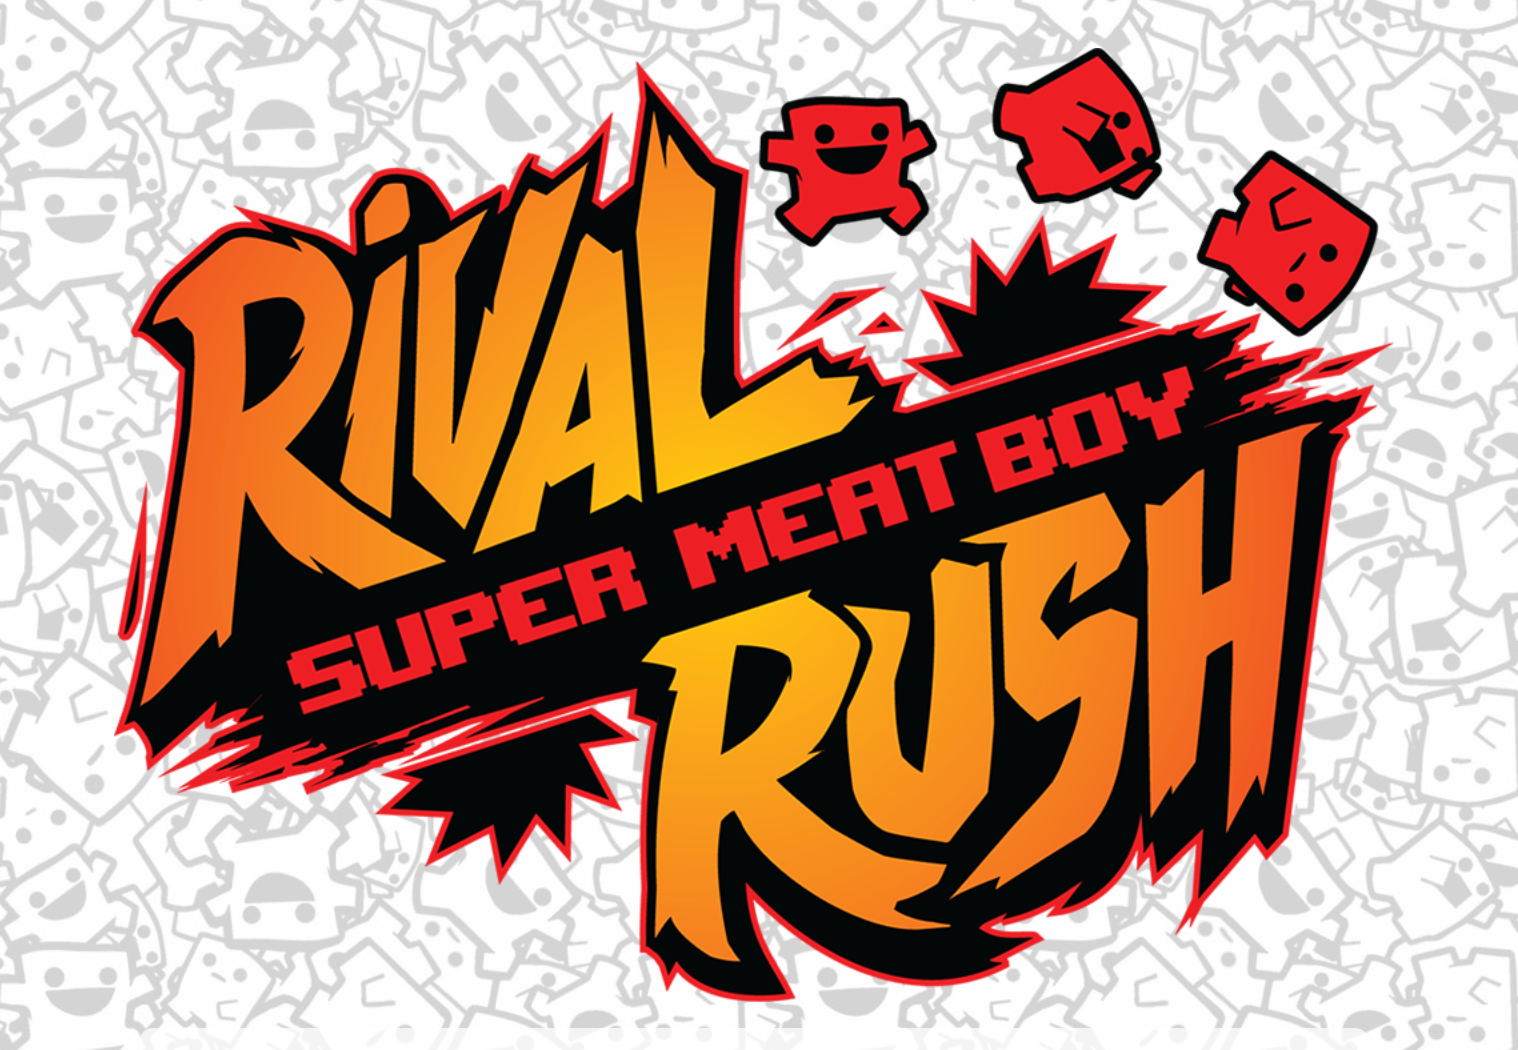 Super Meat Boy agora tem um jogo de cartas físico chamado Rival Rush